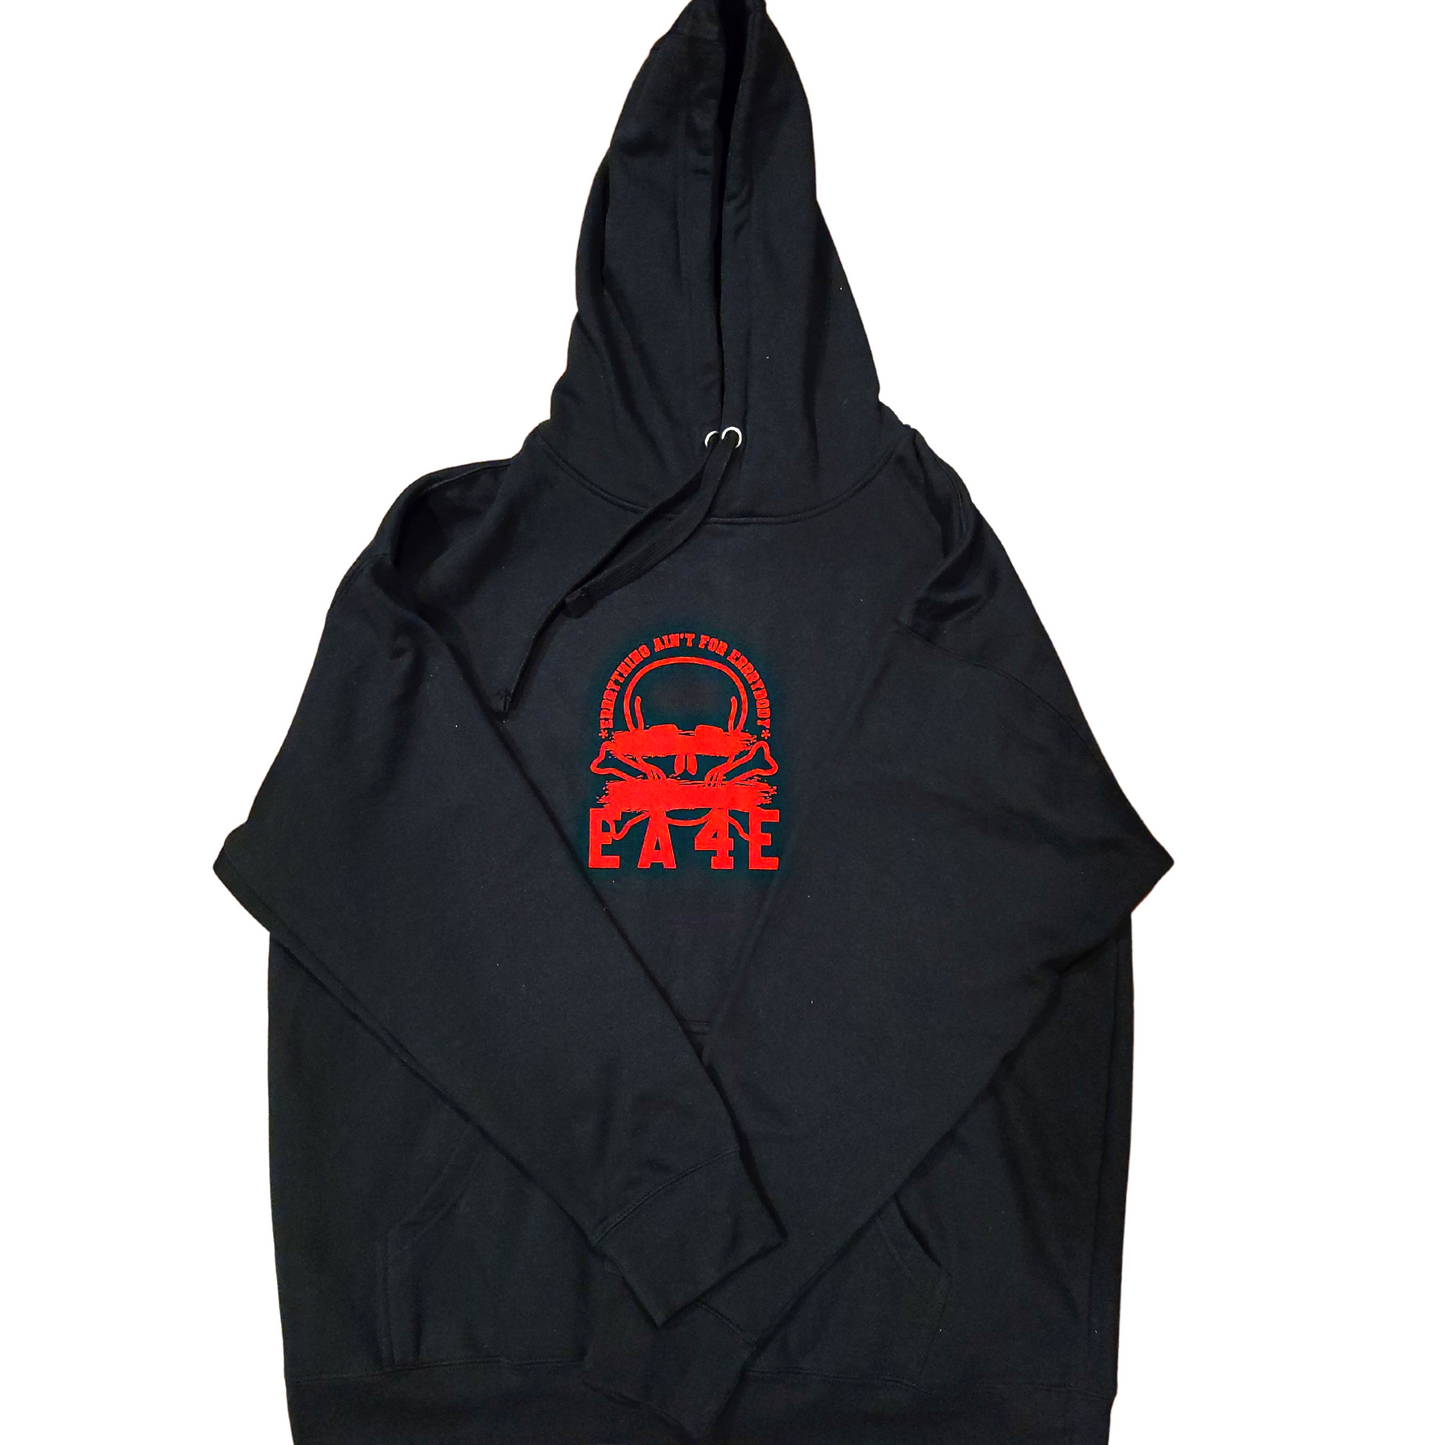 NEW EA4E hoodies